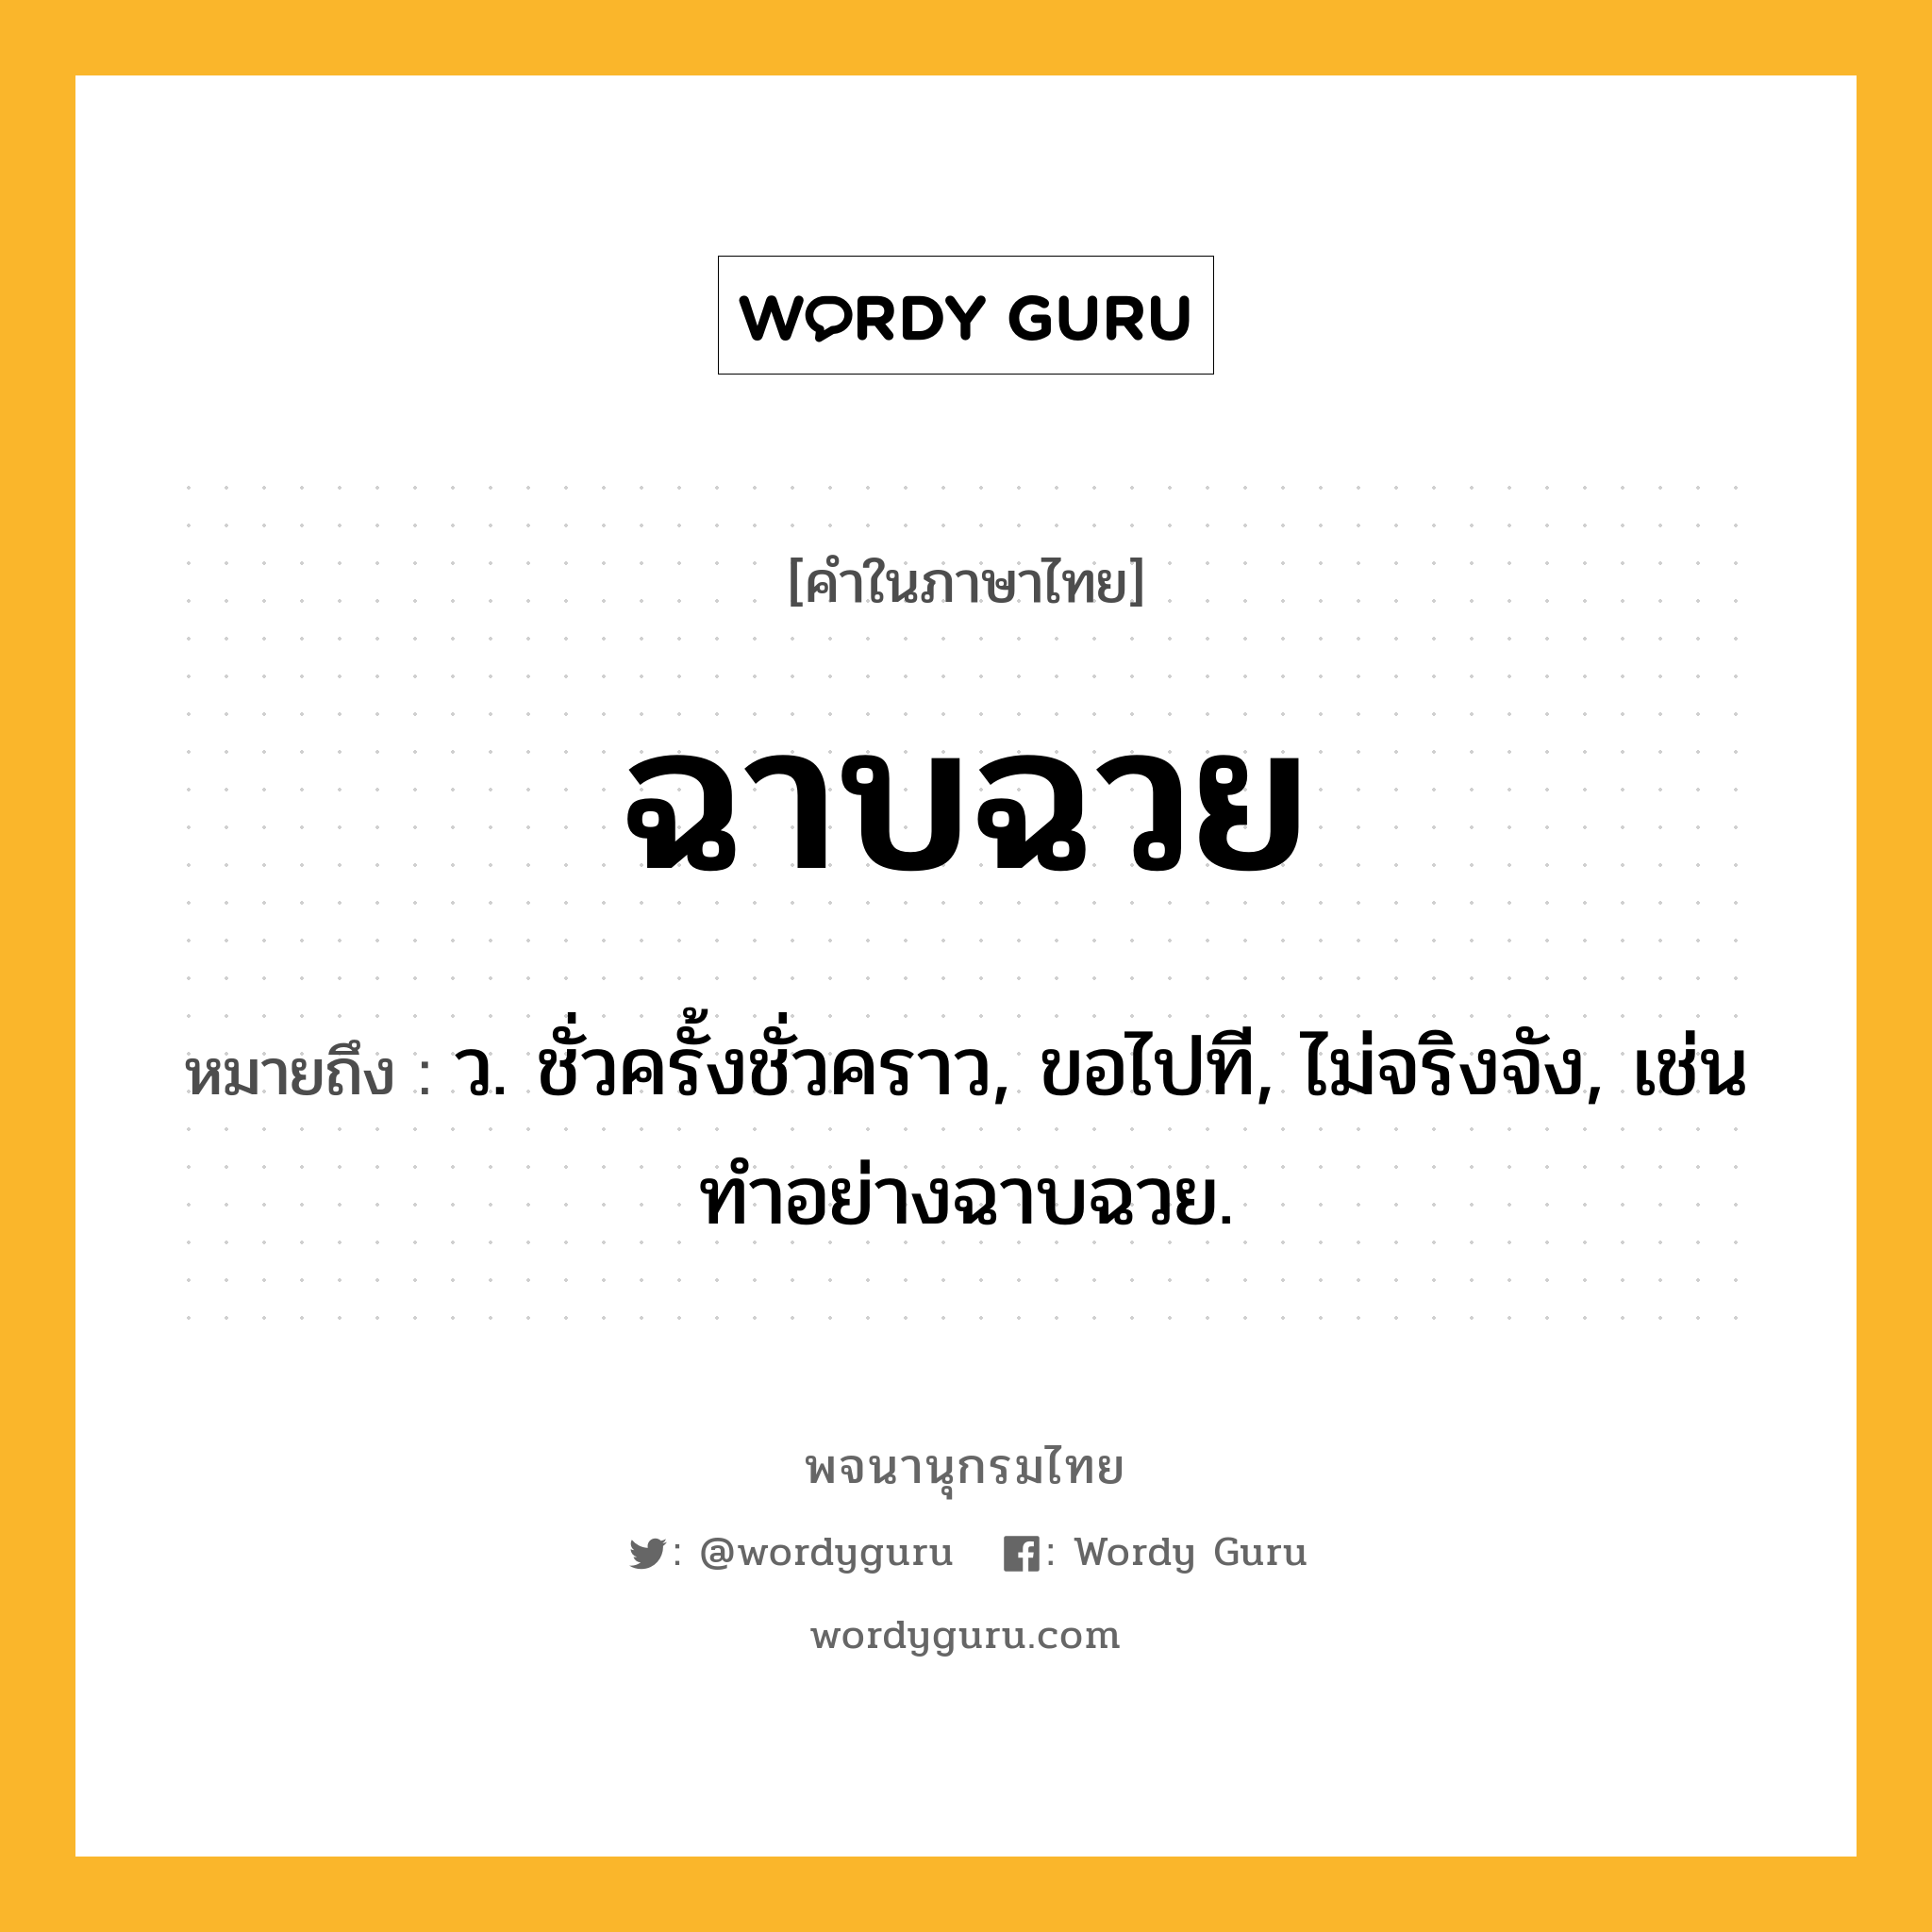 ฉาบฉวย หมายถึงอะไร?, คำในภาษาไทย ฉาบฉวย หมายถึง ว. ชั่วครั้งชั่วคราว, ขอไปที, ไม่จริงจัง, เช่น ทําอย่างฉาบฉวย.